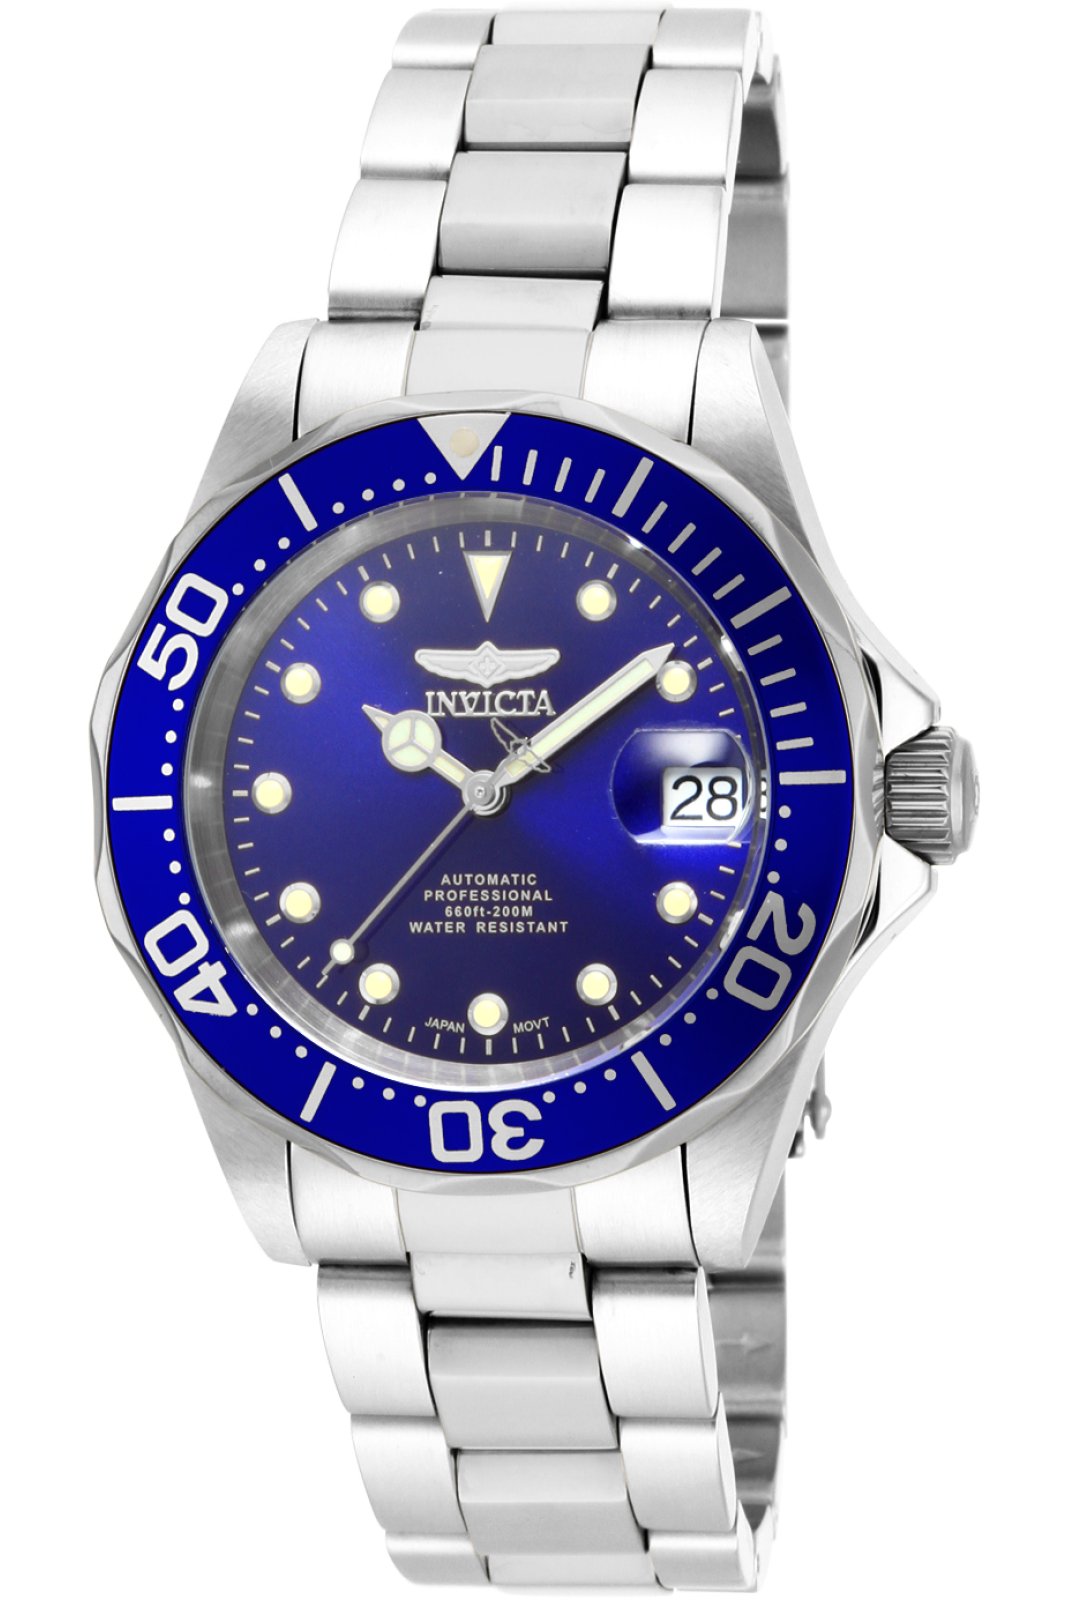 Invicta Pro Diver 17040 Men's Automatic Watch - 40mm